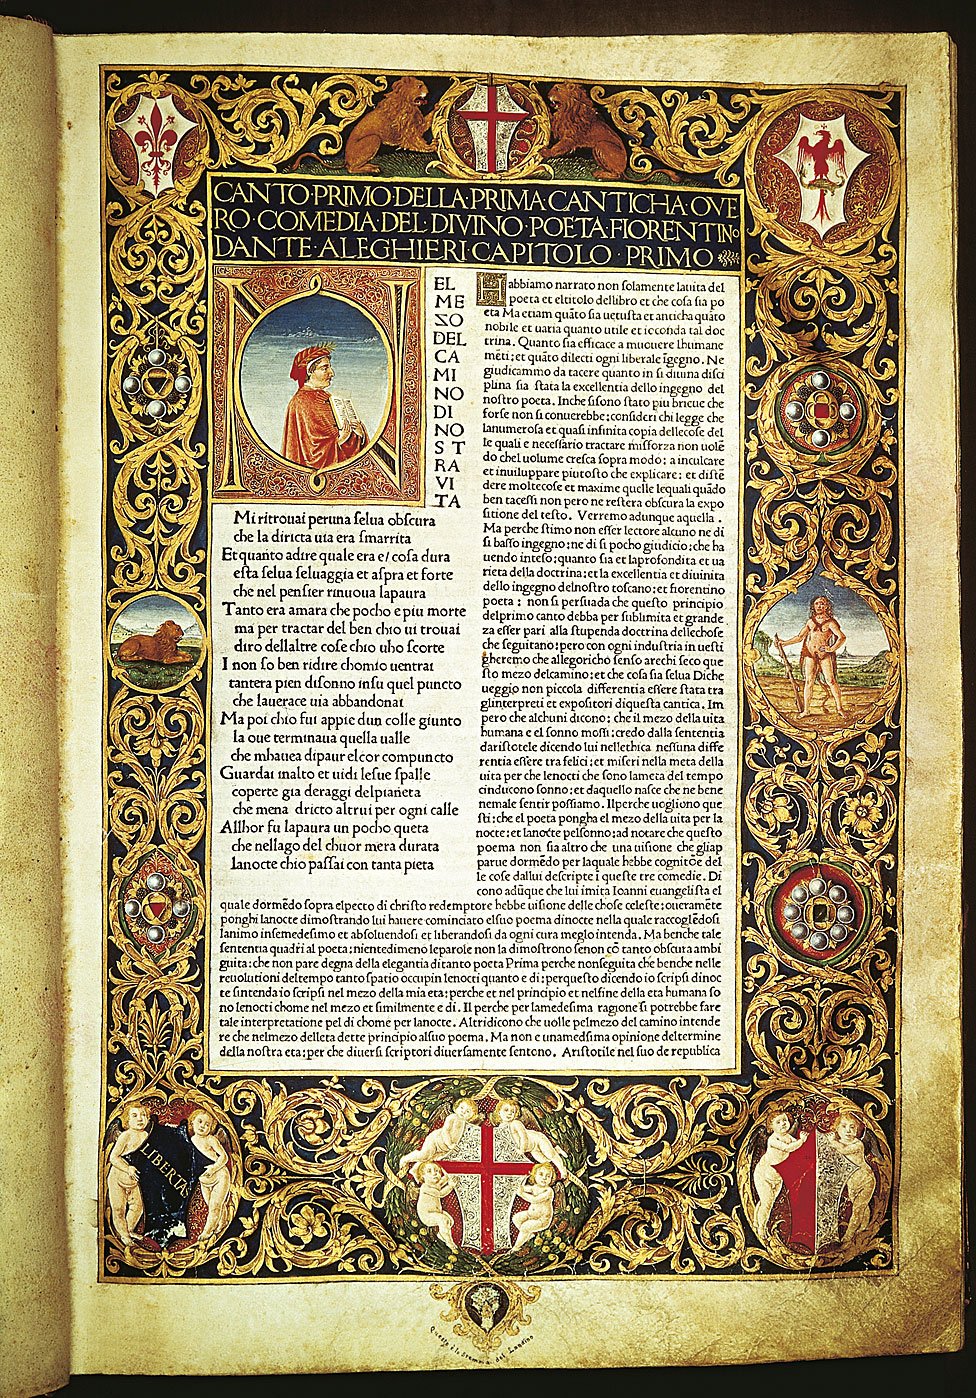 El infierno de la Divina Comedia, primera página iluminada, edición anotada por Cristoforo Landino, 1481. Florencia, Biblioteca Nazionale Centrale